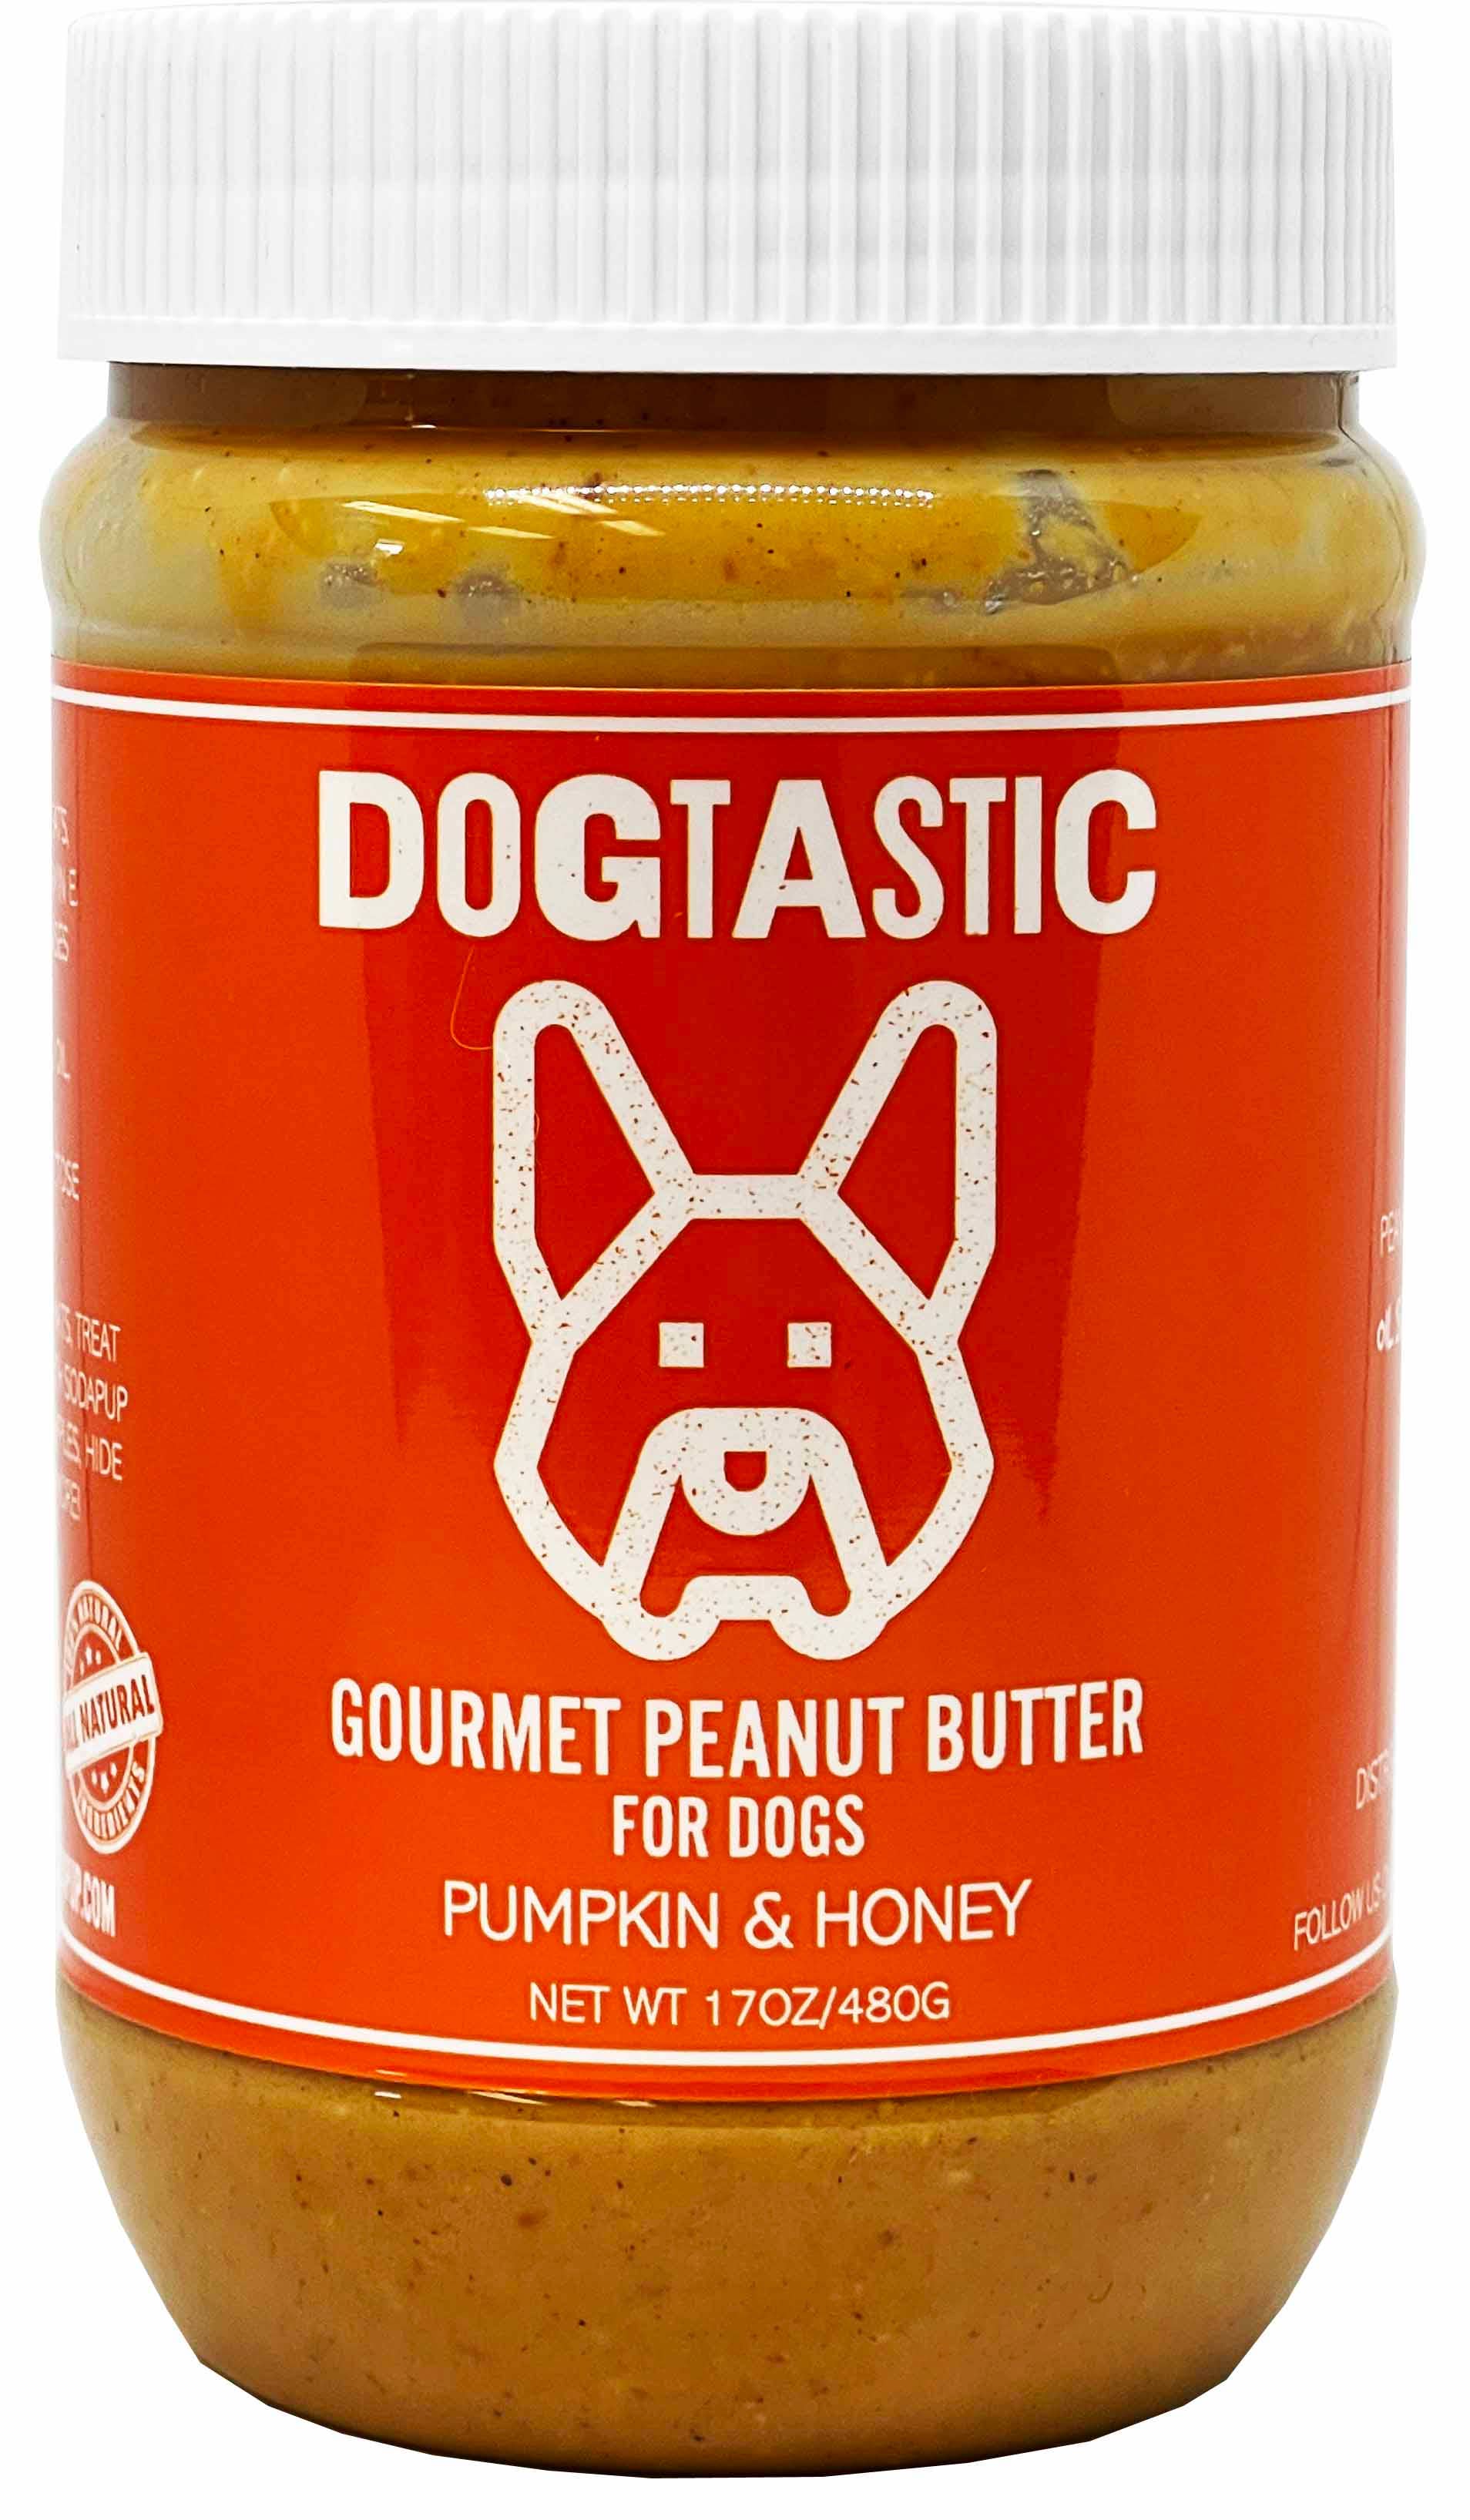 SodaPup - Dogtastic Gourmet Peanut Butter for Dogs - Pumpkin & Honey Flavor